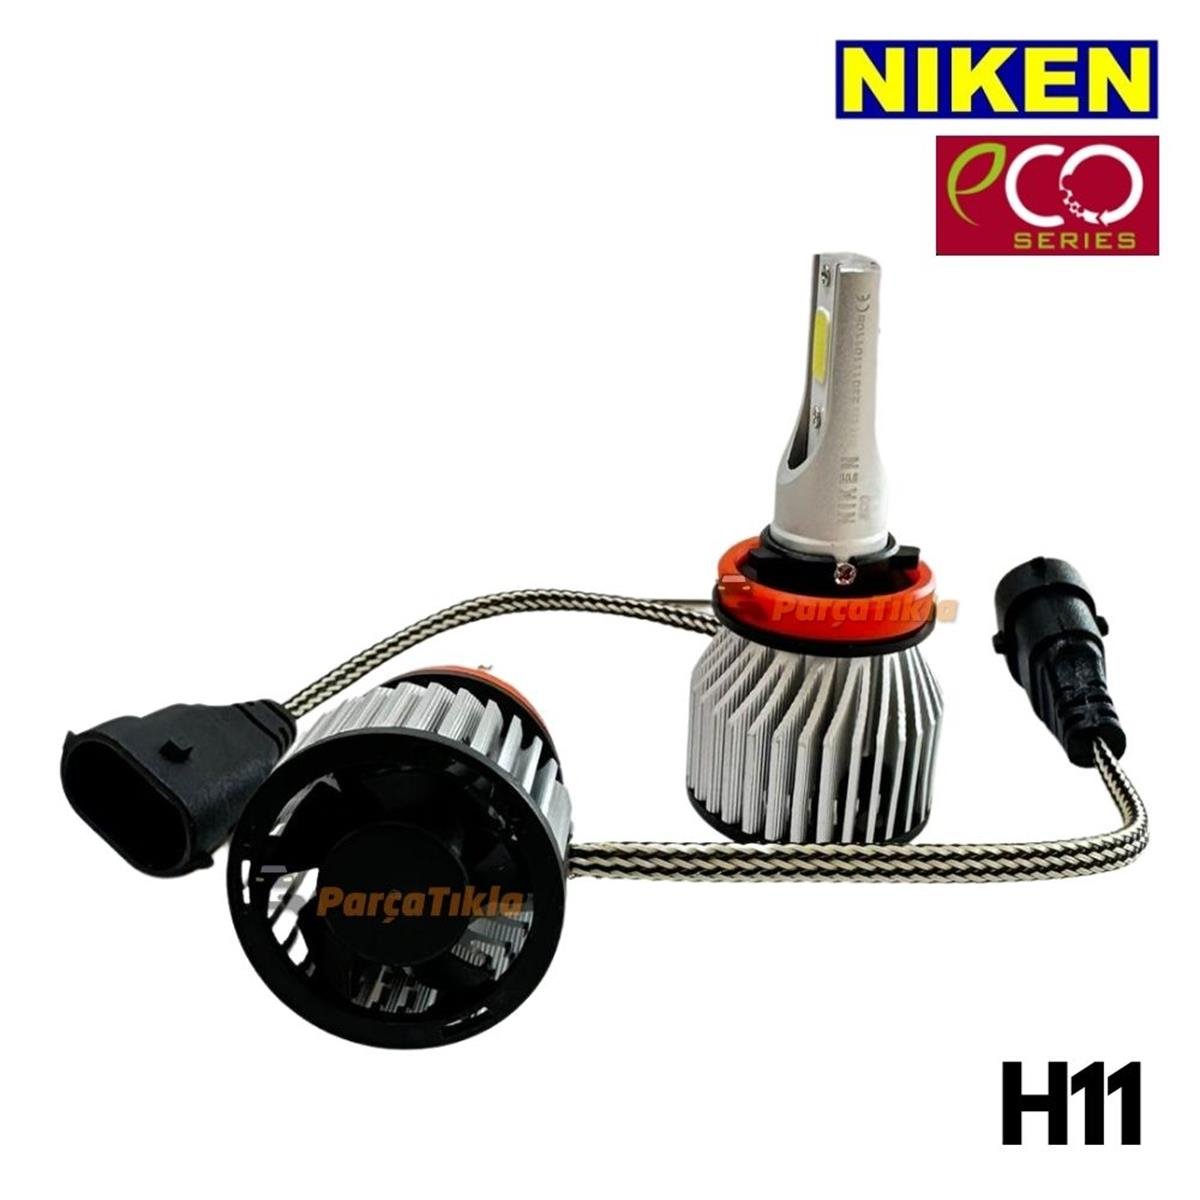 Led Xenon H11 Niken Eco Seri Ekonomik ( 12V ) | Nıken Ecoh11 | NIKENECOH11  | Parcatikla.com